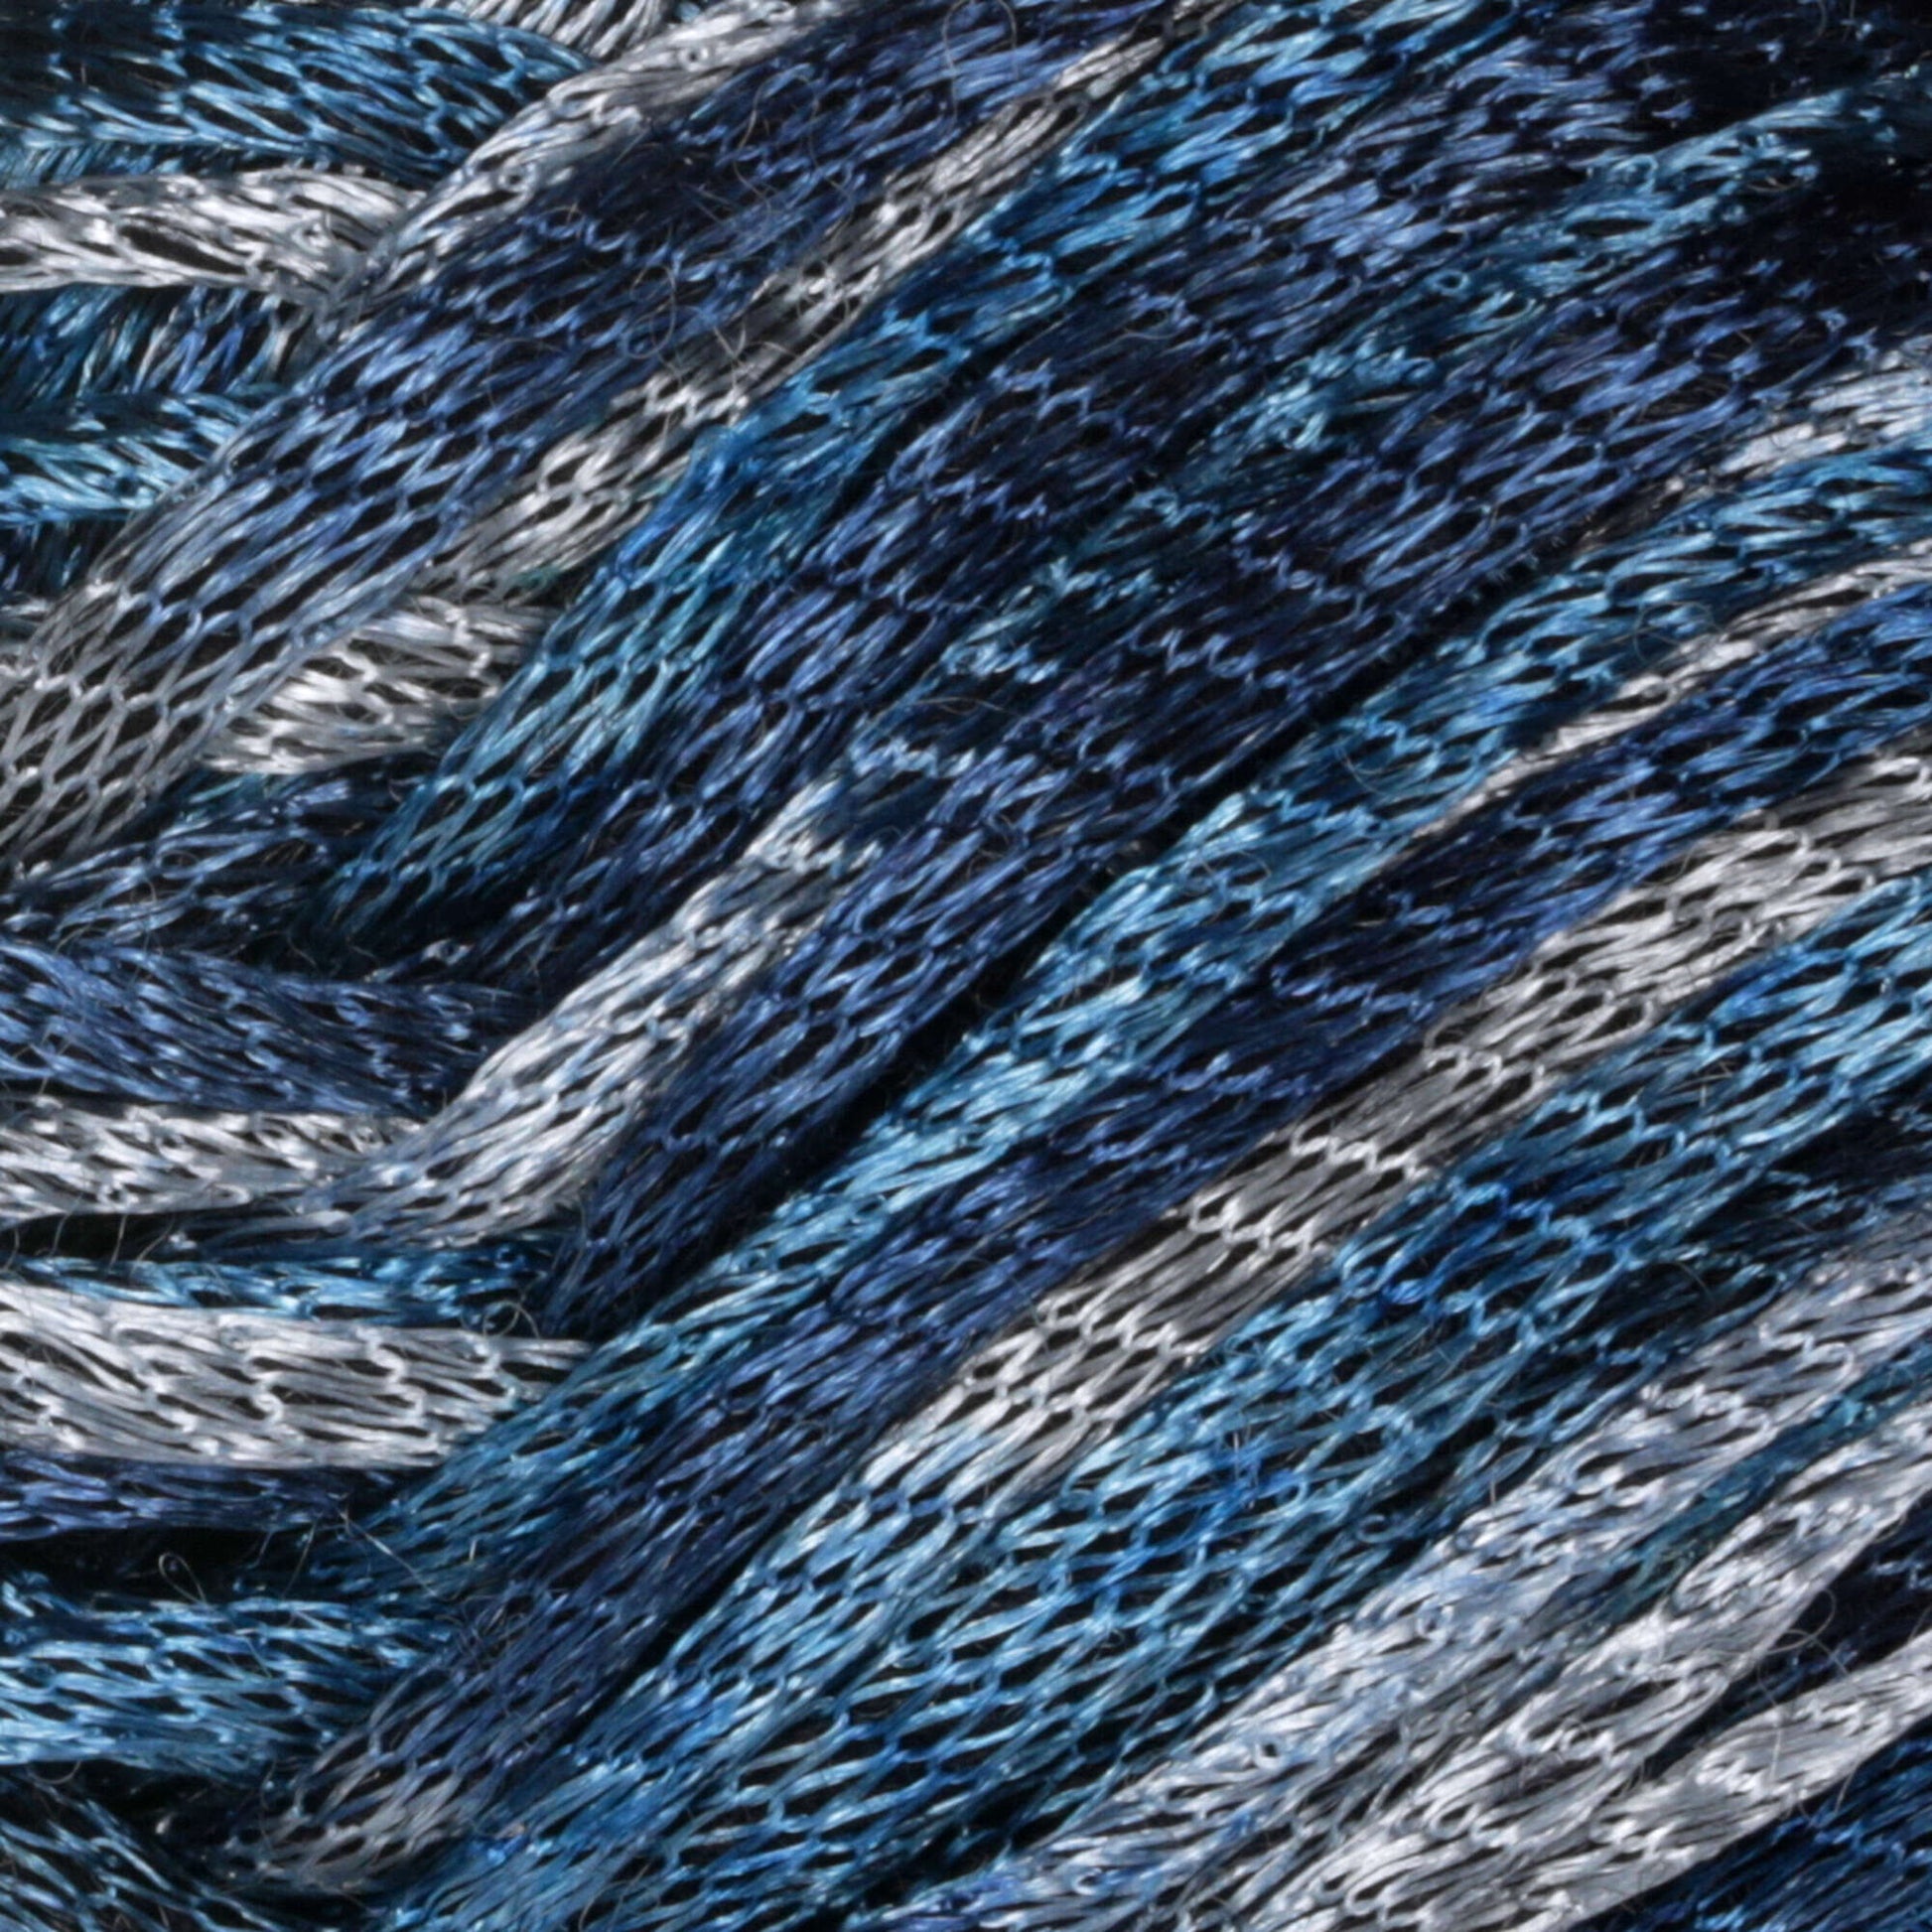 Patons Metallic Yarn - Discontinued Marlin Teal